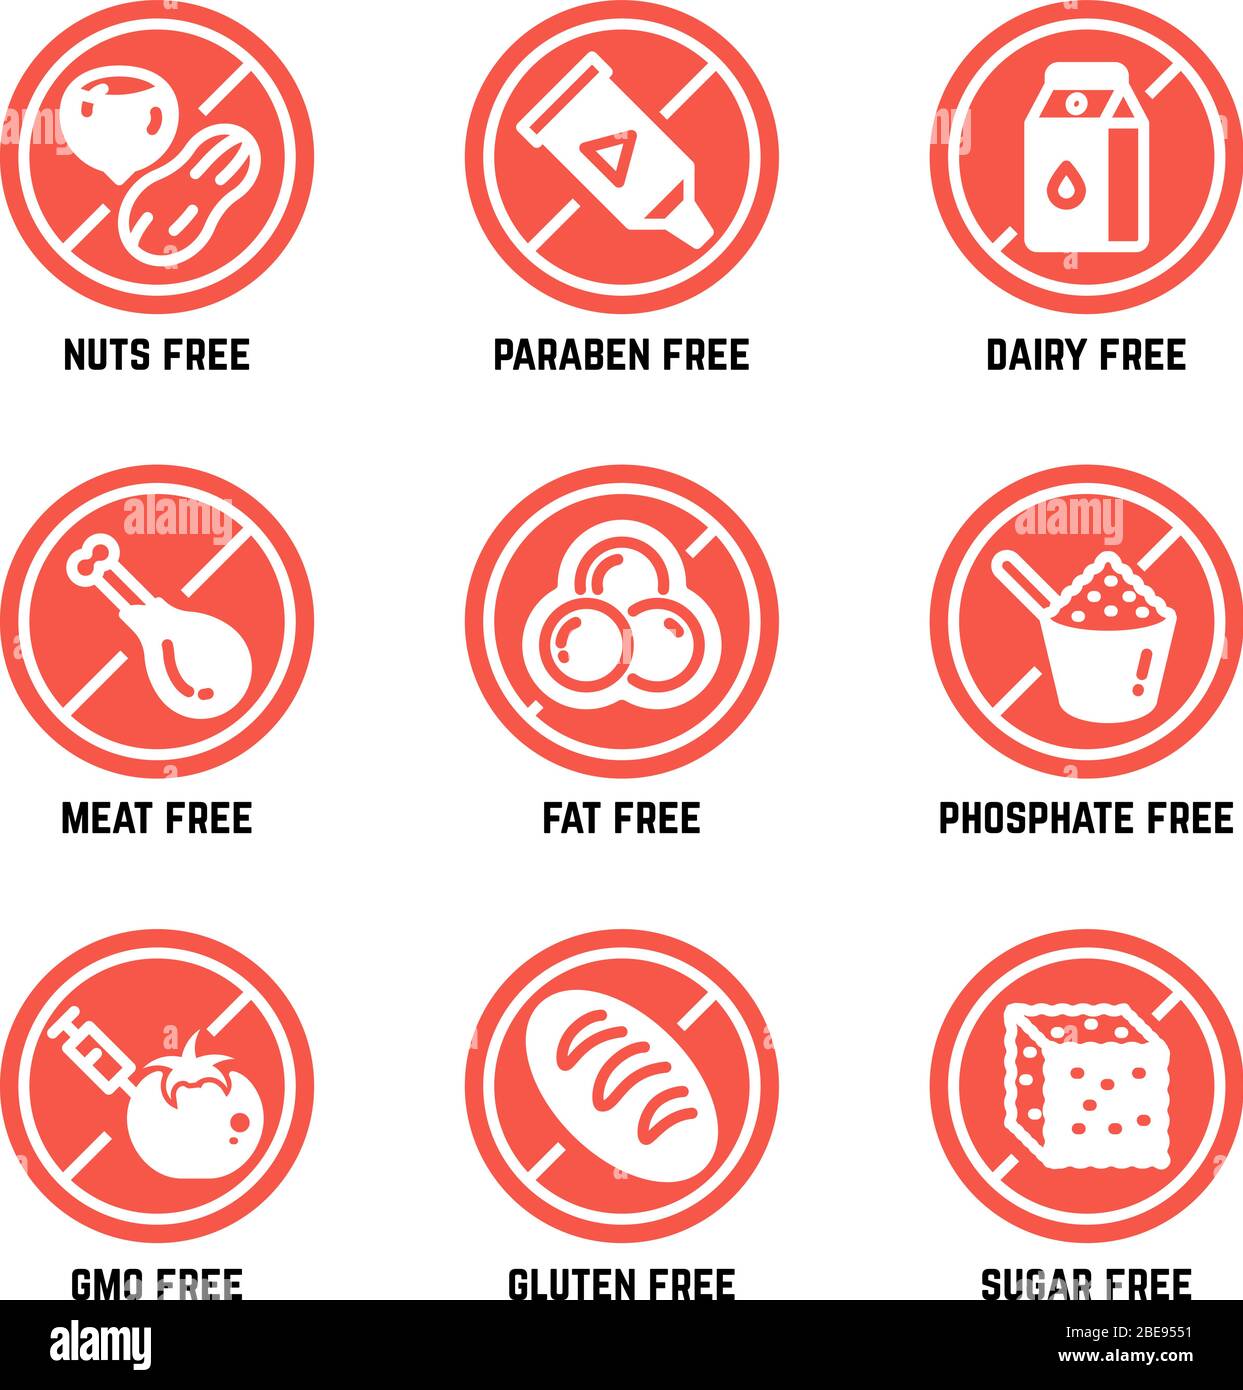 Simboli alimentari dietetici. Set di icone per vettori senza OGM, senza glutine, senza glutine e allergici. Niente zucchero e glutine, divieto di ogm e fosfato Illustrazione Vettoriale